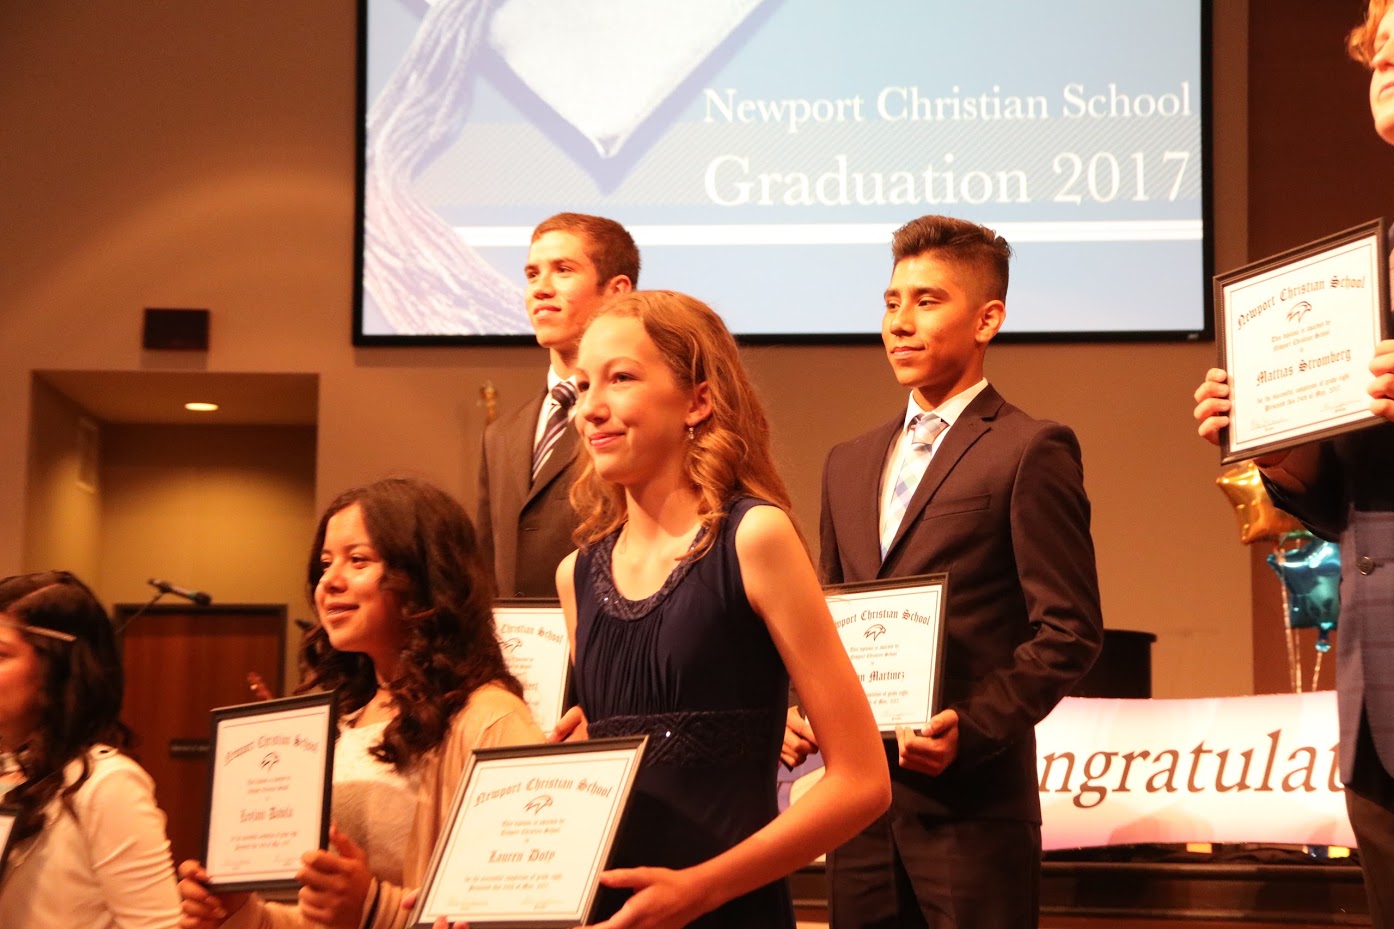 graduation-requirements-newport-christian-school-california